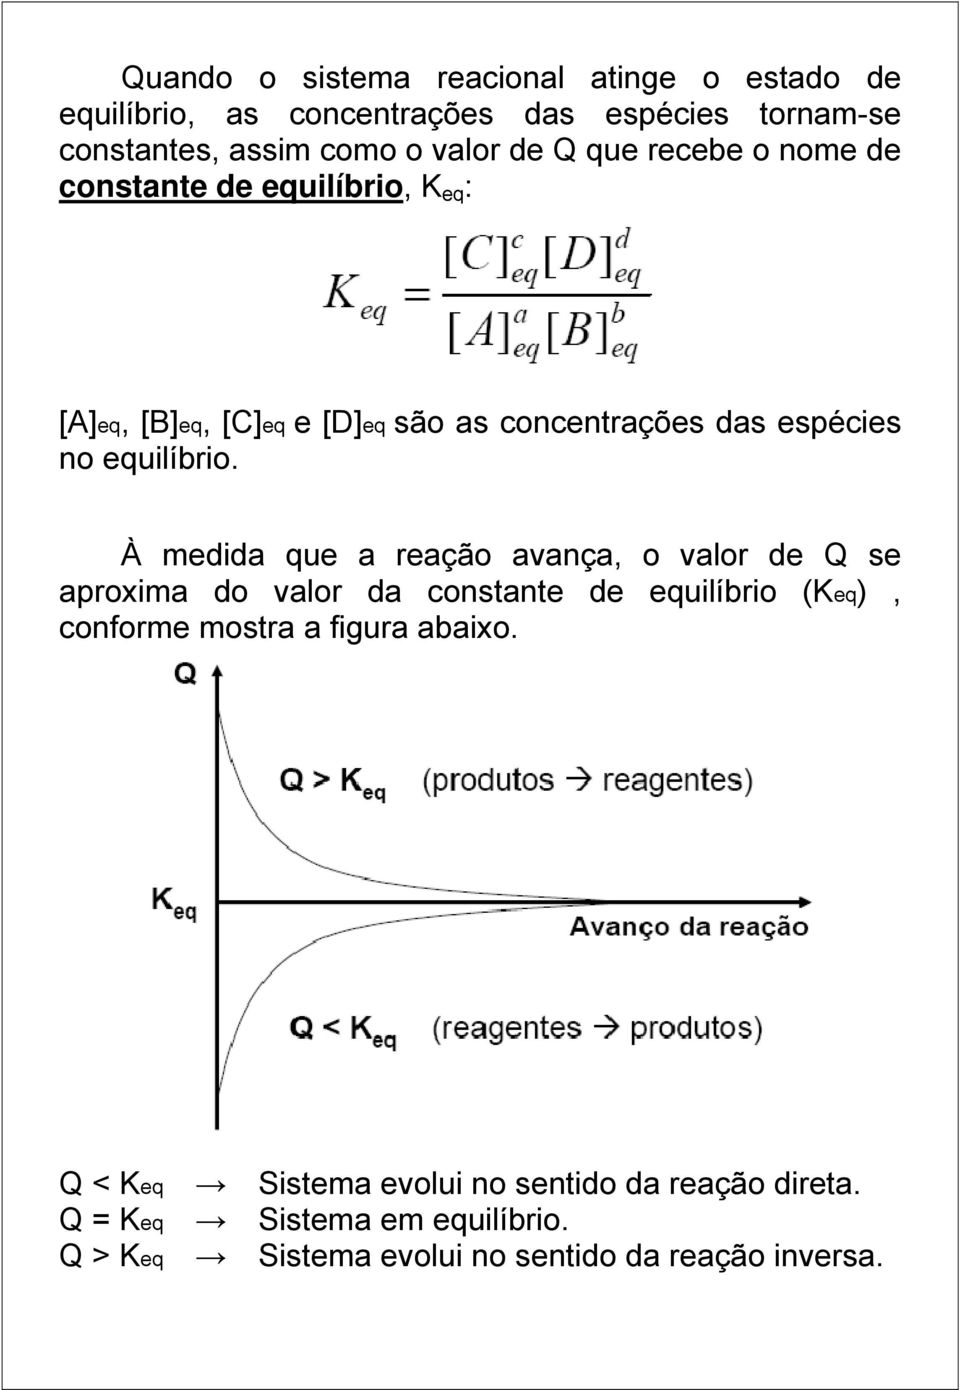 À medida que a reação avança, o valor de Q se aproxima do valor da constante de equilíbrio (Keq), conforme mostra a figura abaixo.